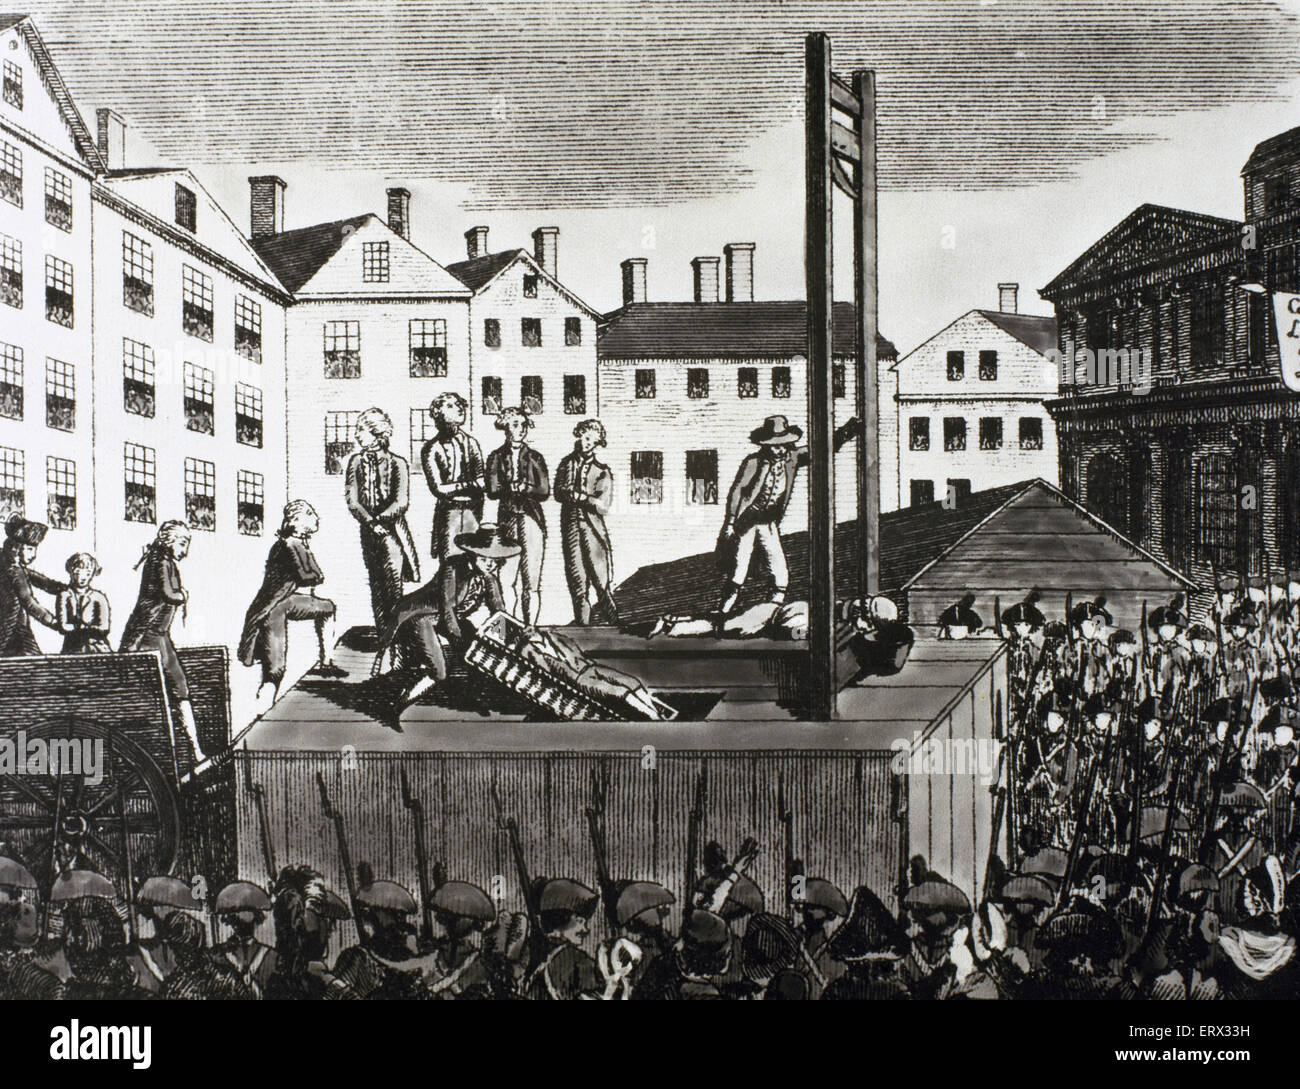 Révolution française (1789-1799). Exécution de neuf jeunes immigrants condamnés à mort par un tribunal révolutionnaire en 1792. Gravure de l'époque. Banque D'Images